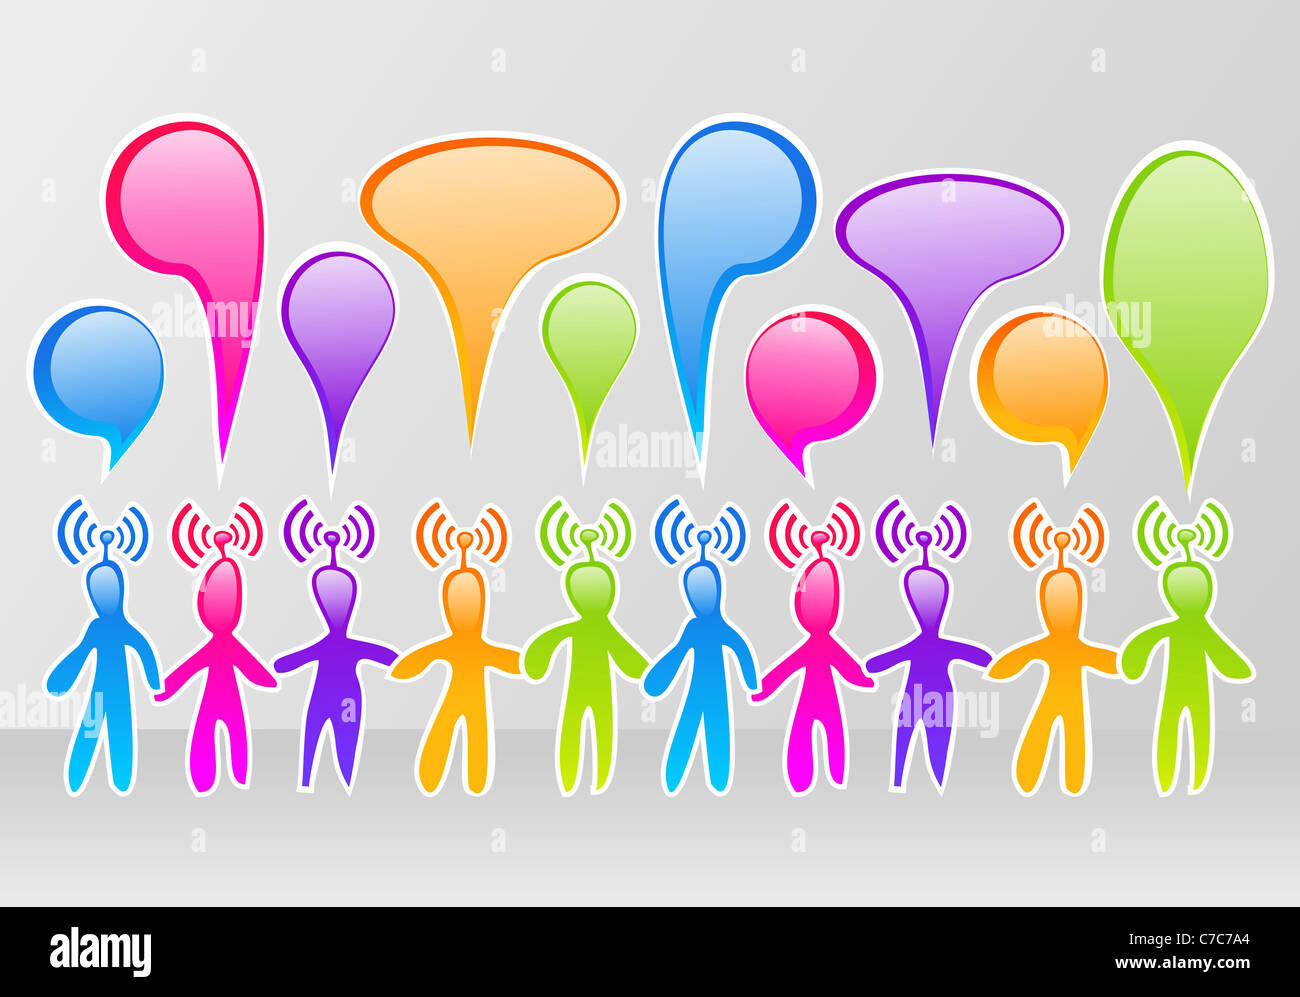 Communauté Réseau social media colorés avec bulle Banque D'Images